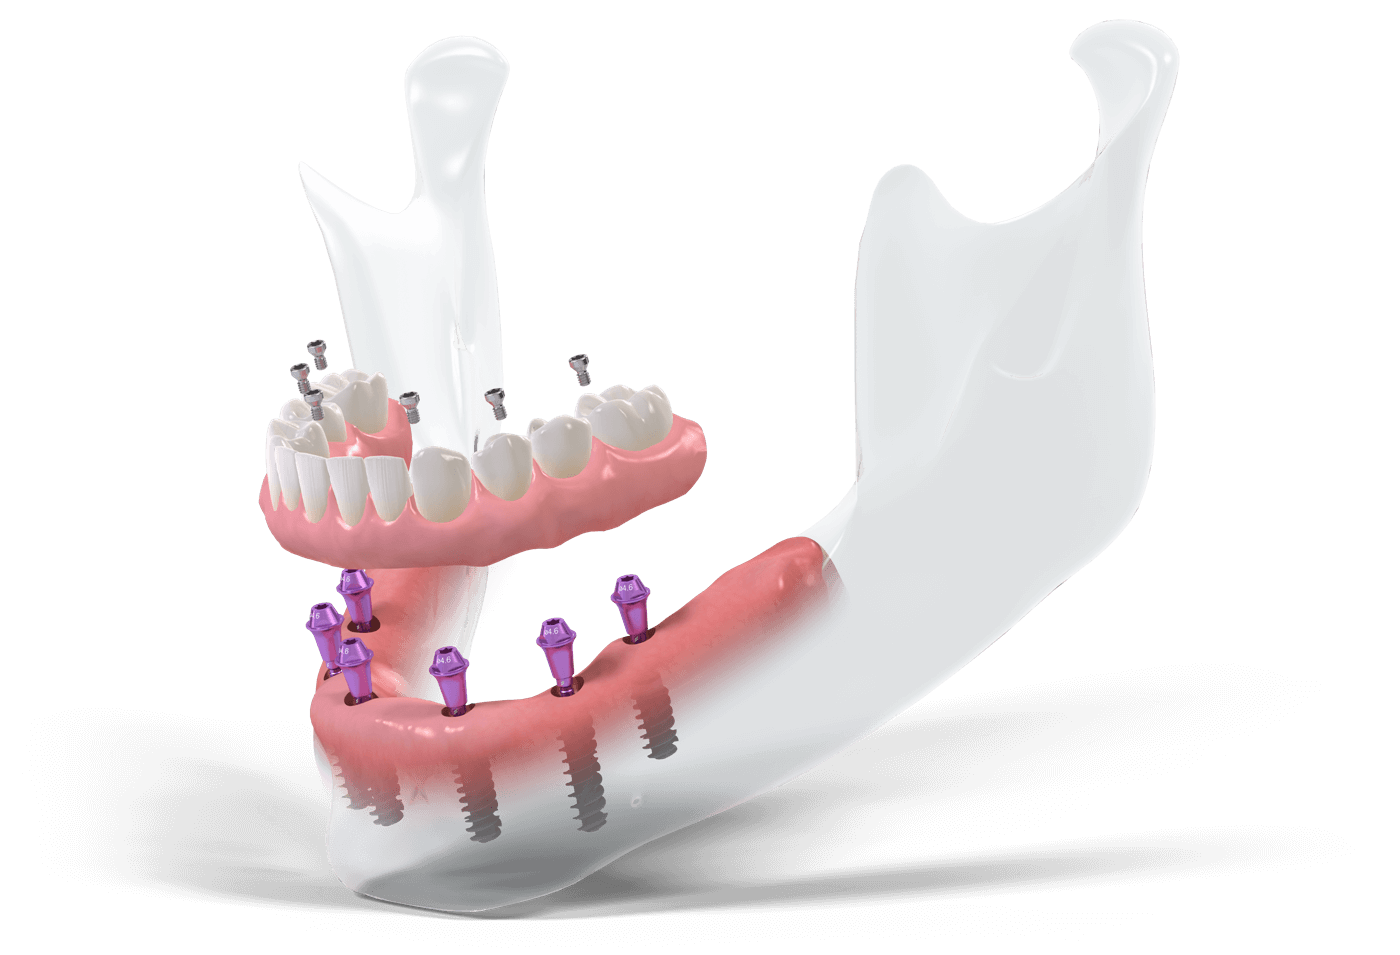 Модель челюсти с установленными имплантатами и протезом челюсти по протоколу имплантации всех зубов Все на 4 | All on 4